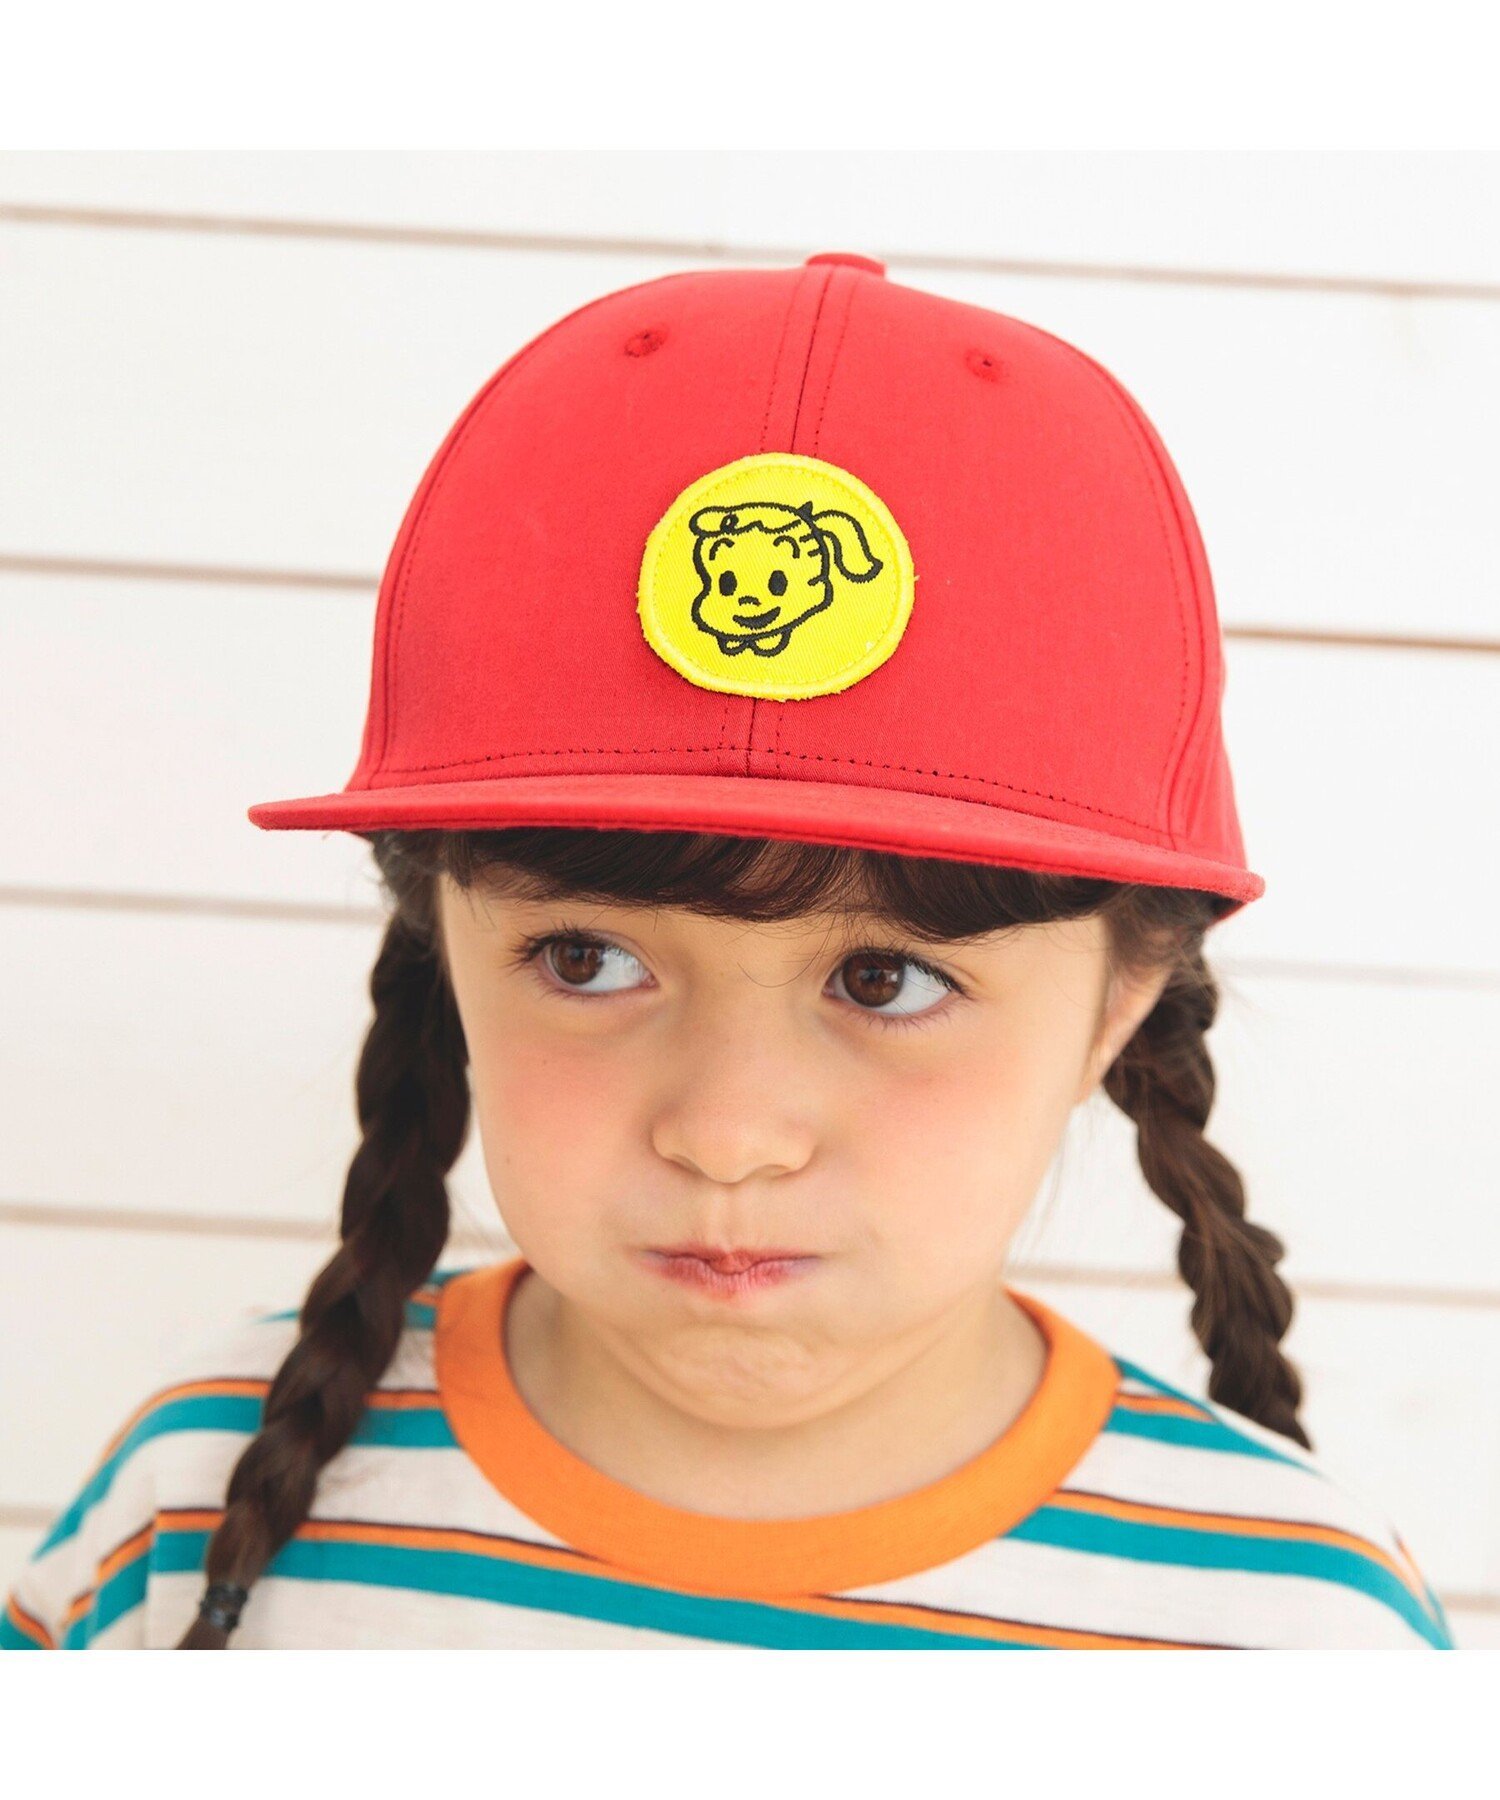 SHISKY シスキー キャップ メッシュ ロゴ 帽子 CAP キッズ ジュニア 男の子 女の子 54cm 56cm サイズ調整 紫外線 日よけ 野球帽 ベースボールキャップ